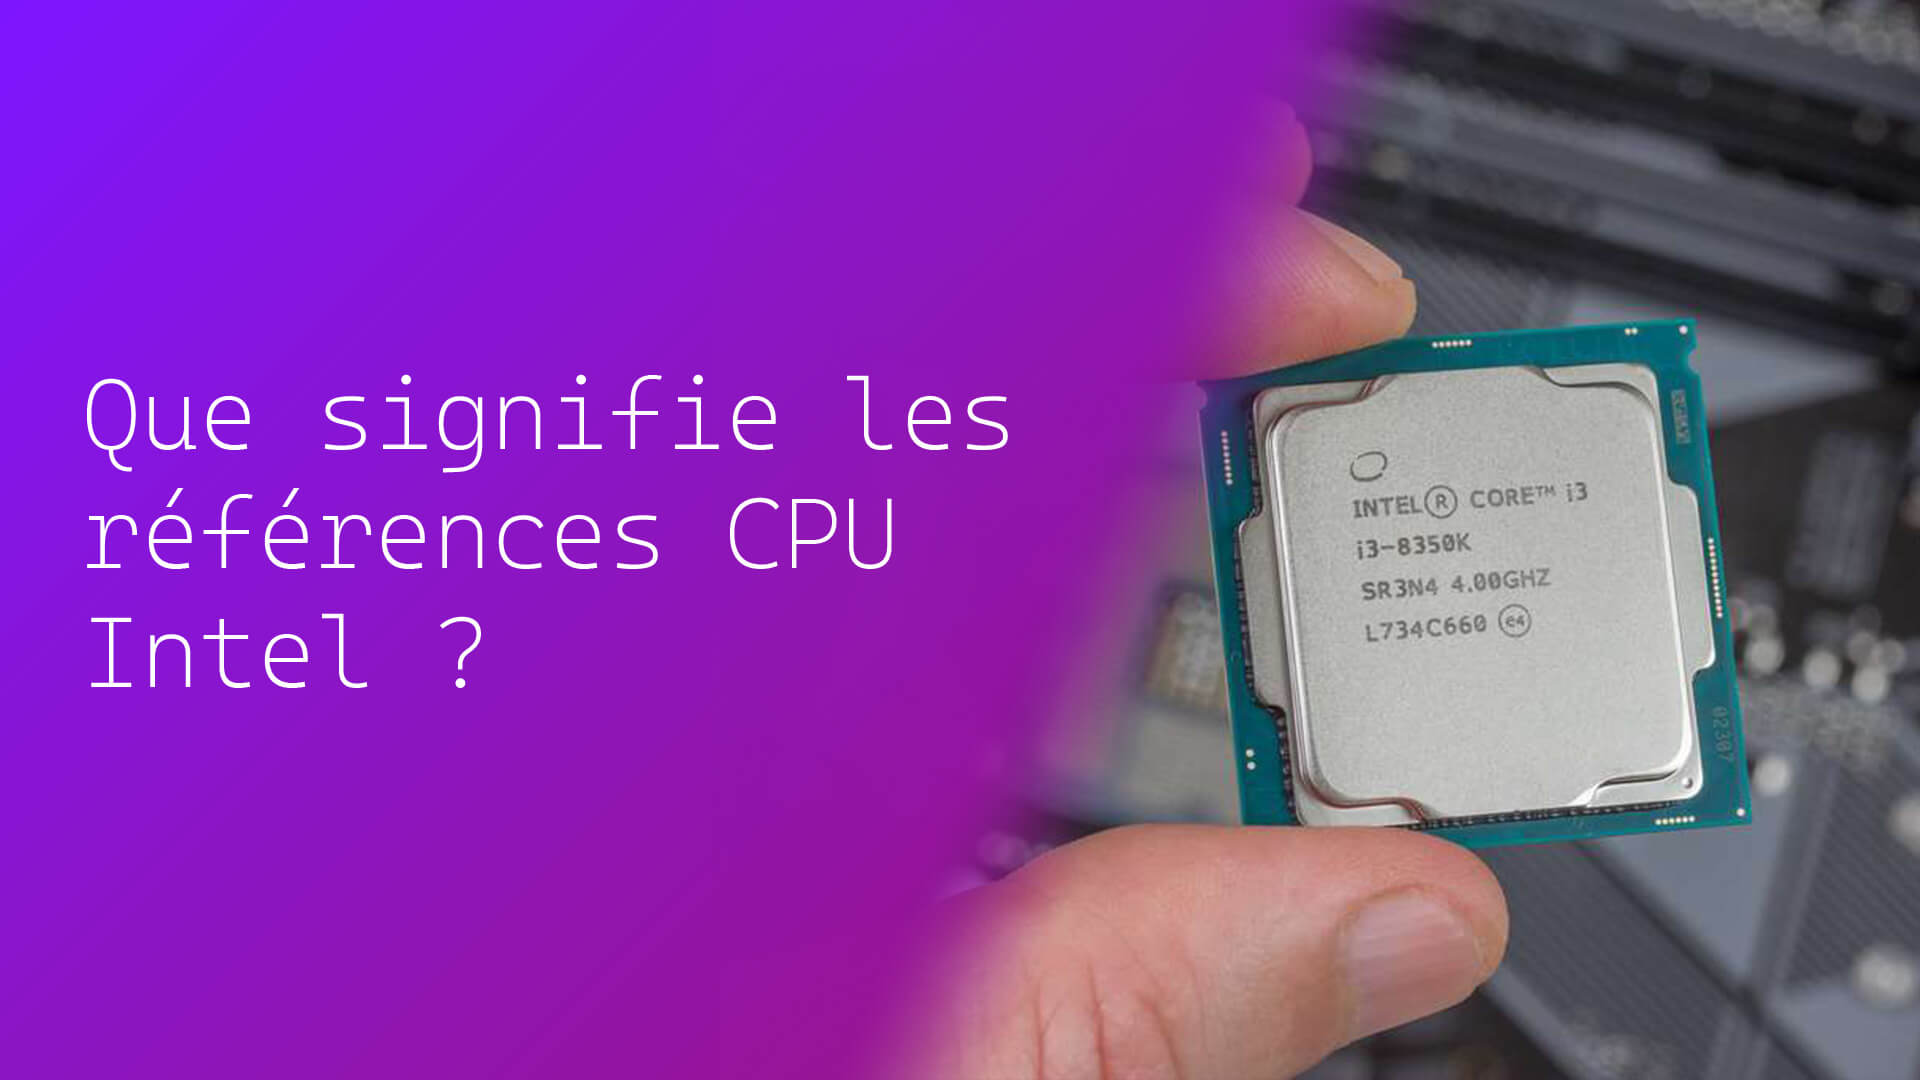 Que signifie les références CPU Intel ?